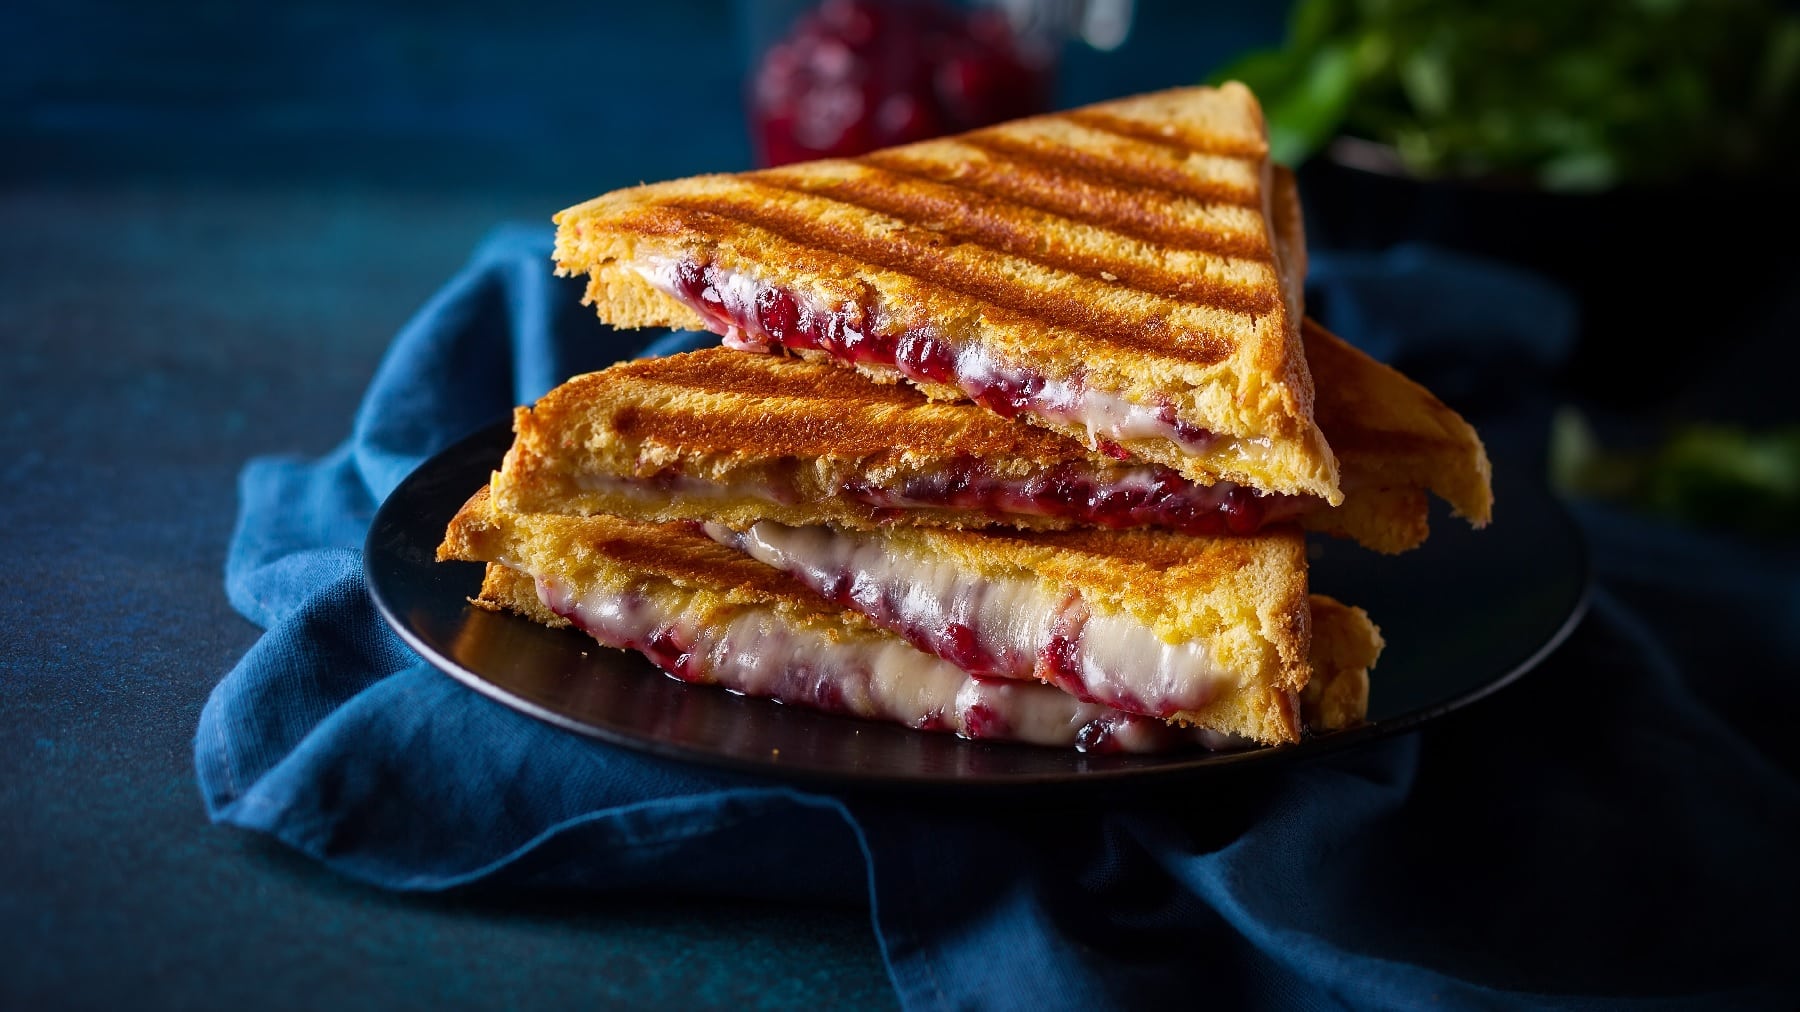 Halbierte Toastscheiben mit dem Käse und Cranberry-Senf auf dunkelblauem Untergrund.